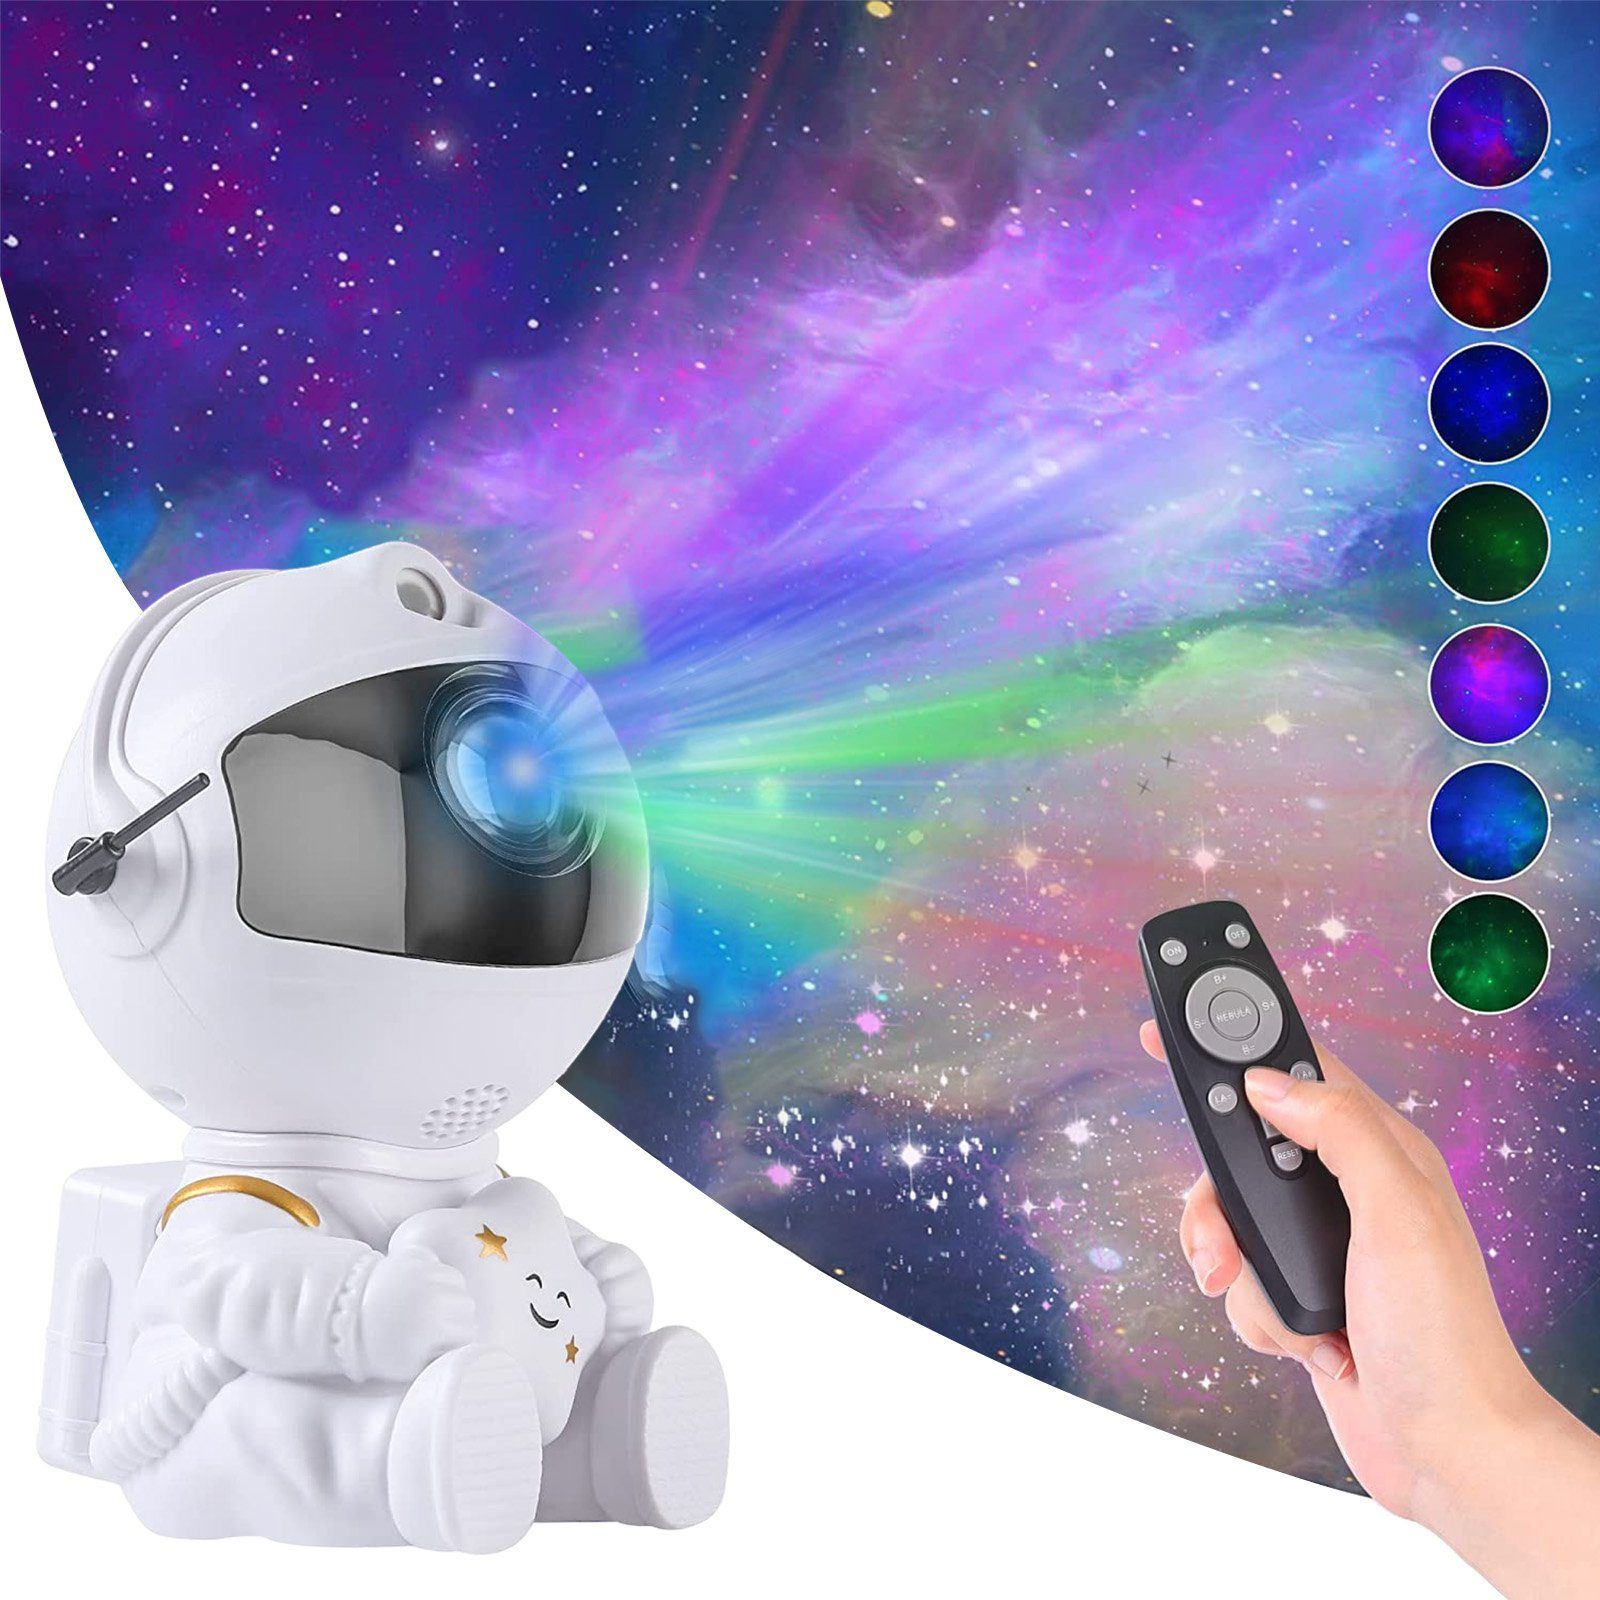 Rosnek LED Nachtlicht Astronaut, Stern-Galaxie-Projektor, für Schlafzimmer Kinderzimmer, Rot, Blau, Grün, Grünes Punktlicht, Heimkino Decke Deko Weiß